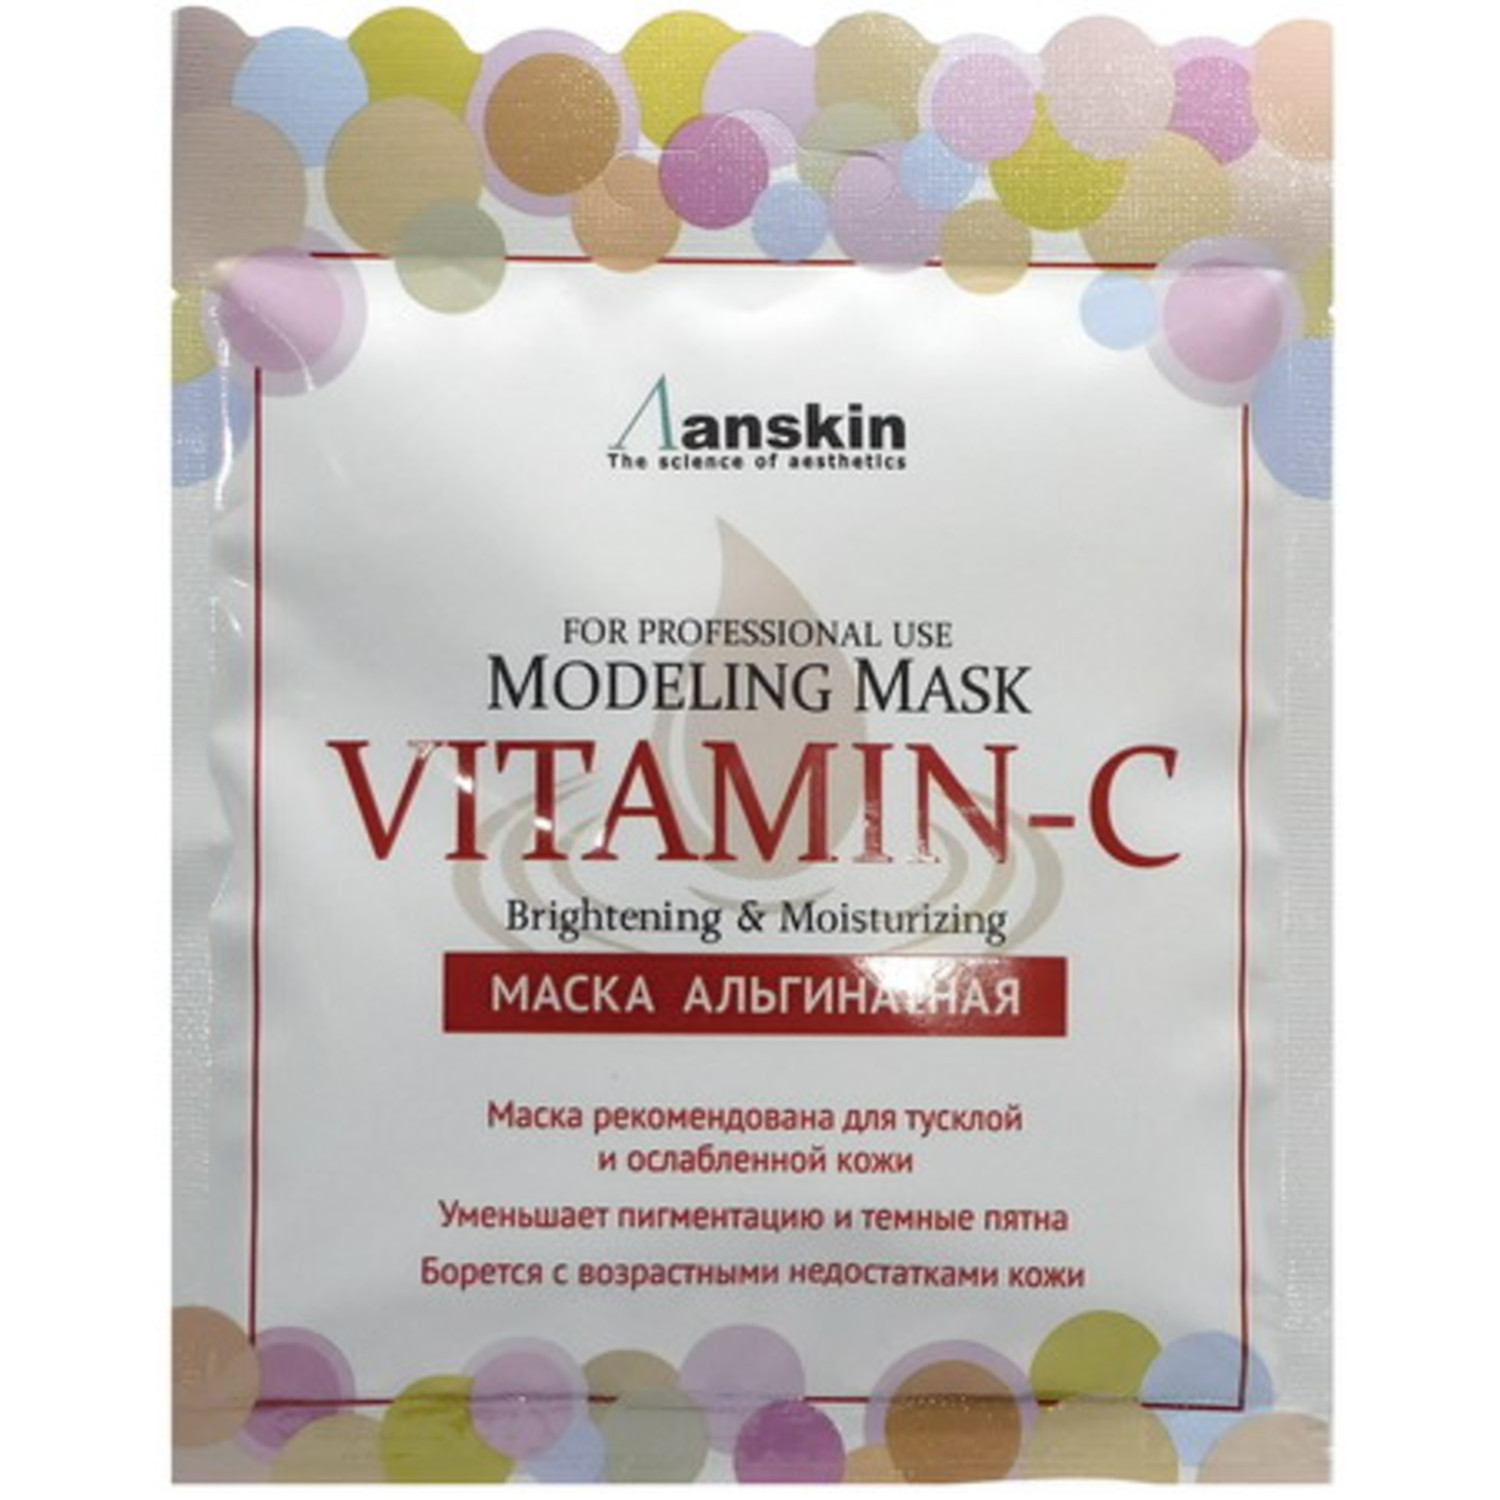 Anskin Modeling Mask Vitamin-C Brightening & Moisturizing альгинатная маска с витамином С для яркости и увлажнения кожи, 25г. / 421812